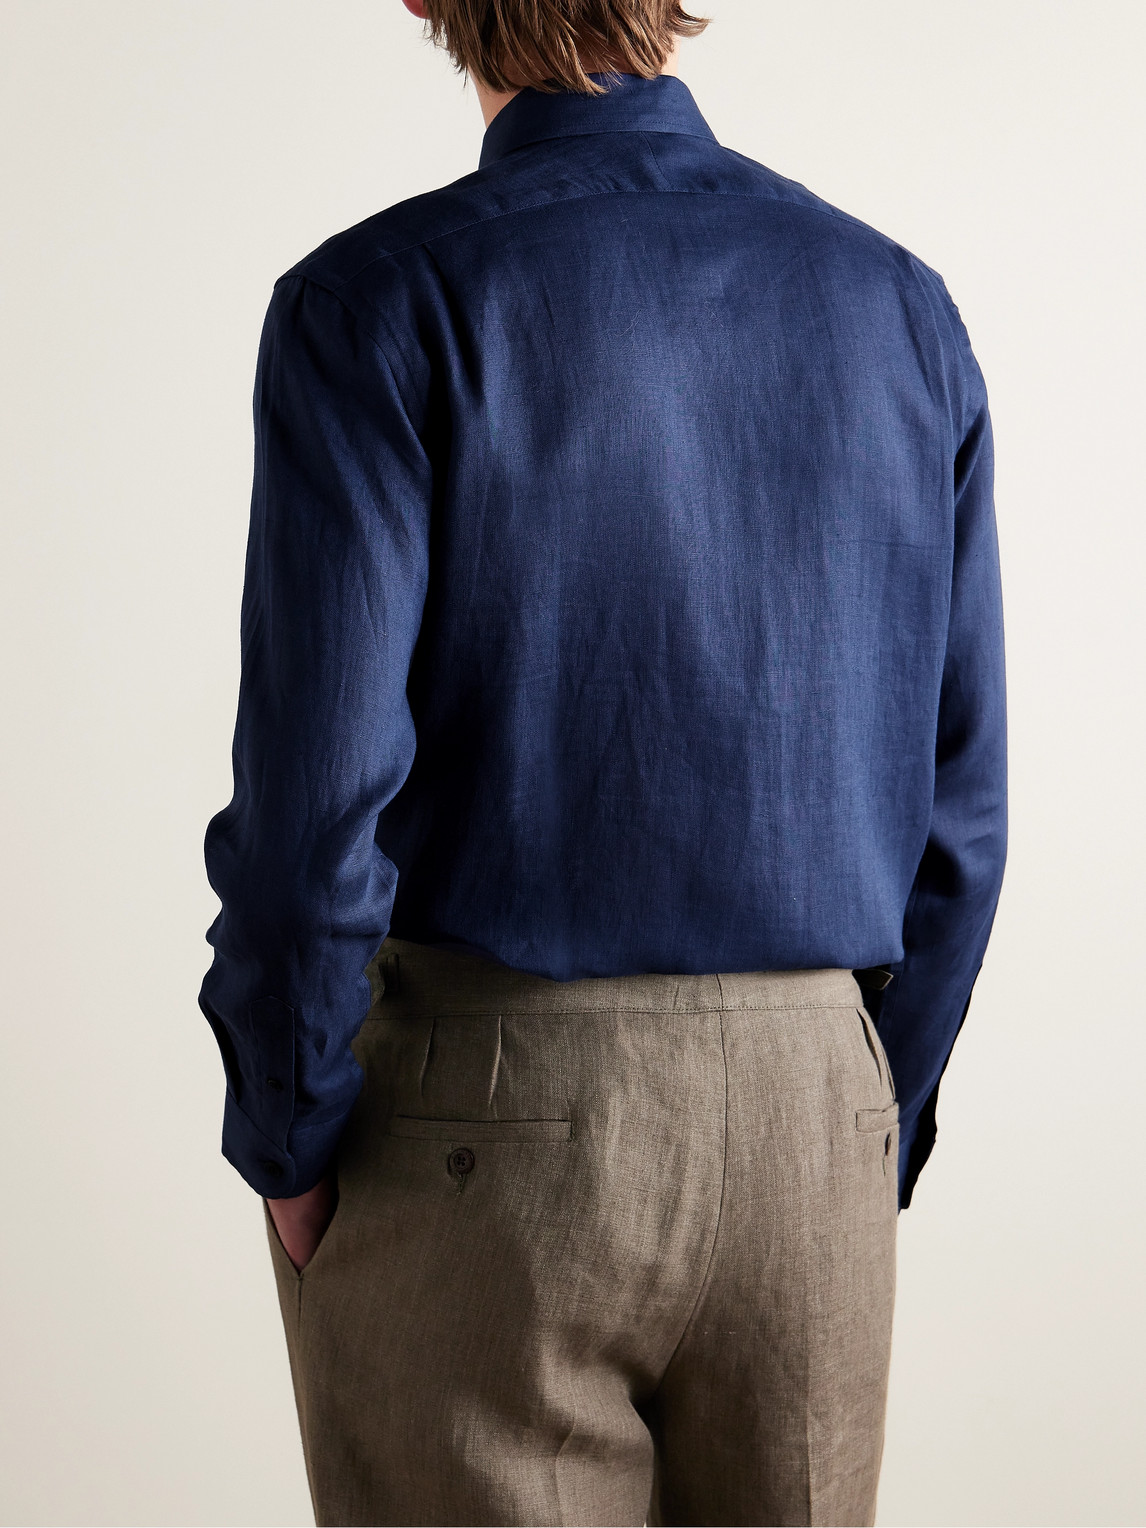 Shop Favourbrook Bridford Cutaway-collar Linen Shirt In Blue